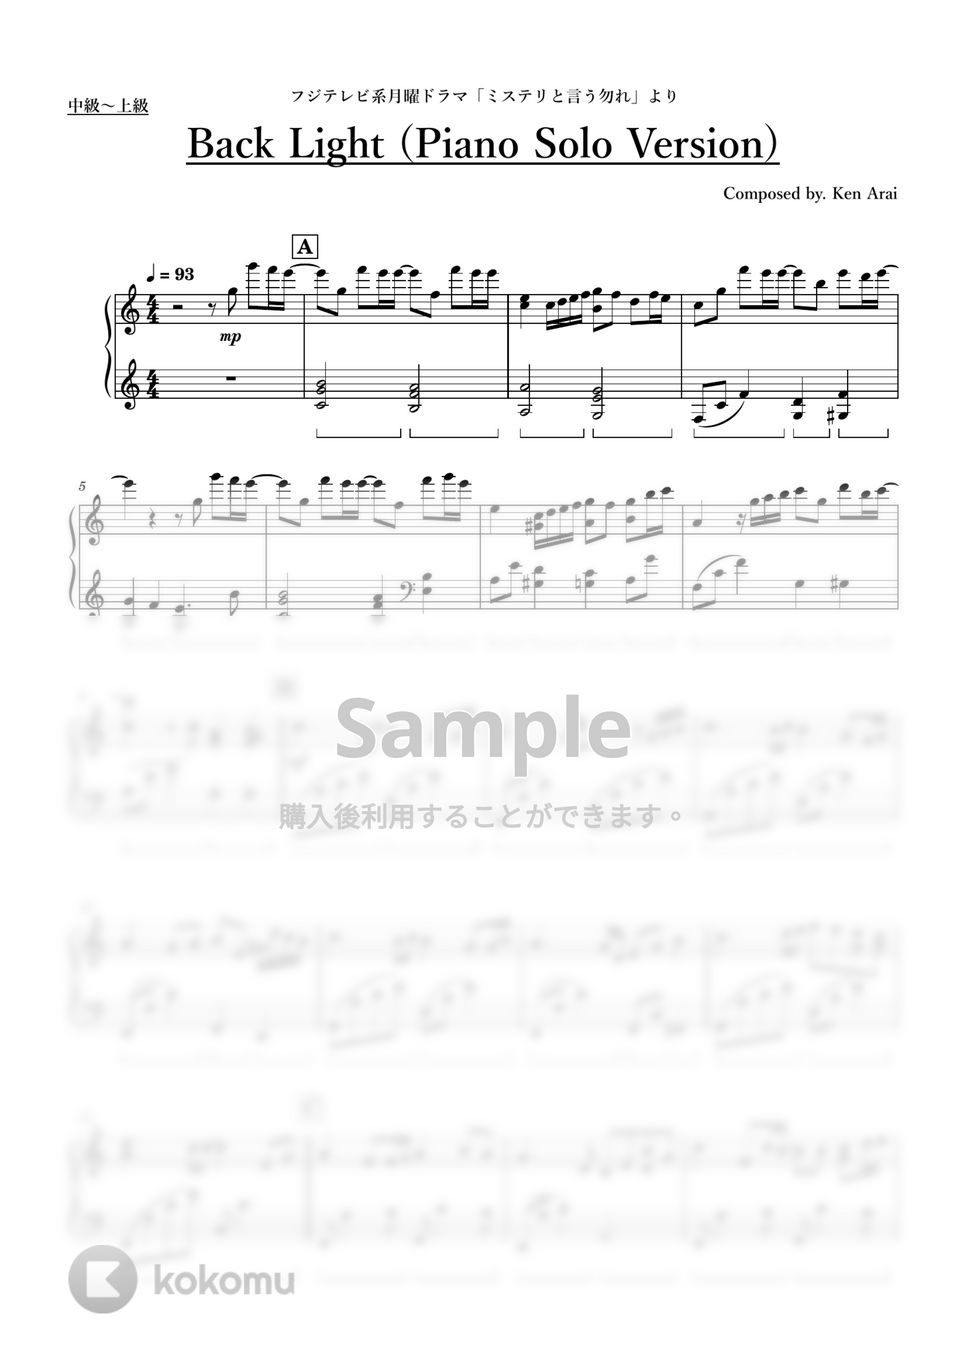 ドラマ「ミステリと言う勿れ」 - Back Light (Piano Solo Version) by ちゃんRINA。